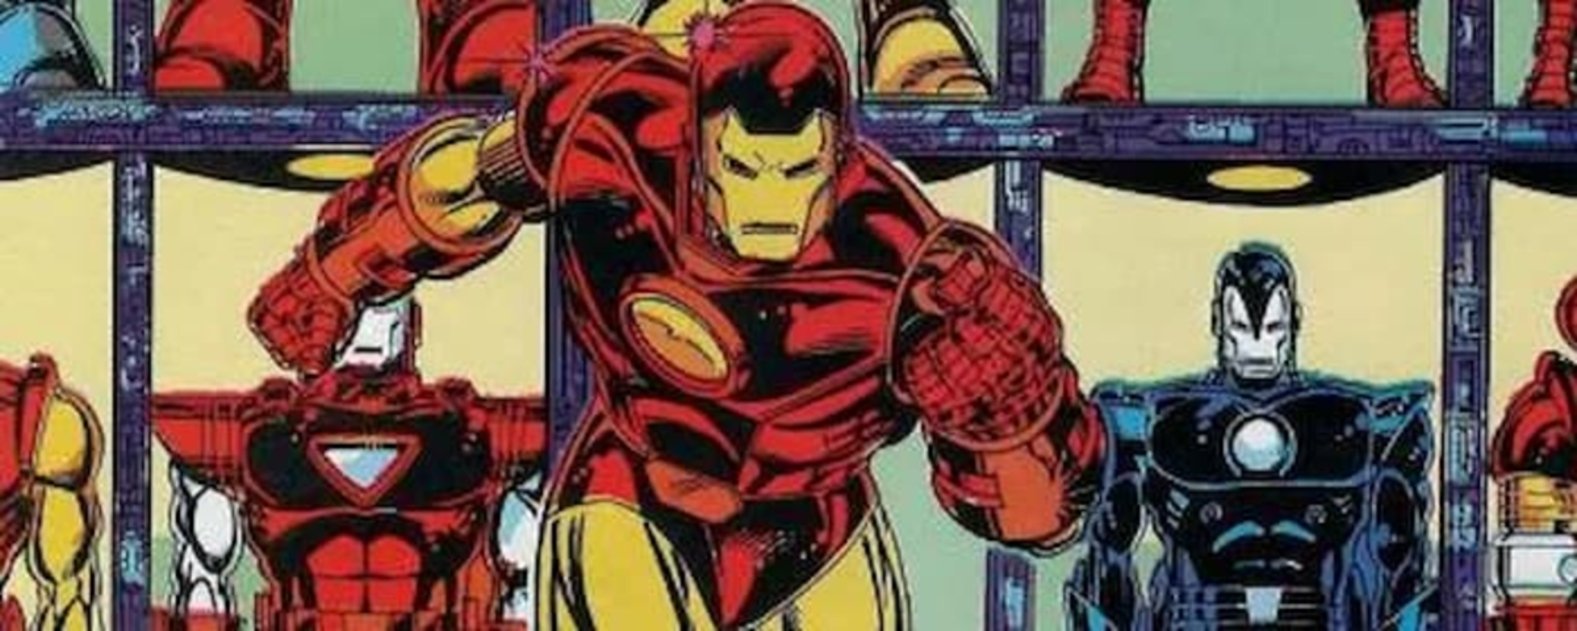 Tony Stark es Iron Man y ese es un poderoso mensaje de esperanza para la humanidad